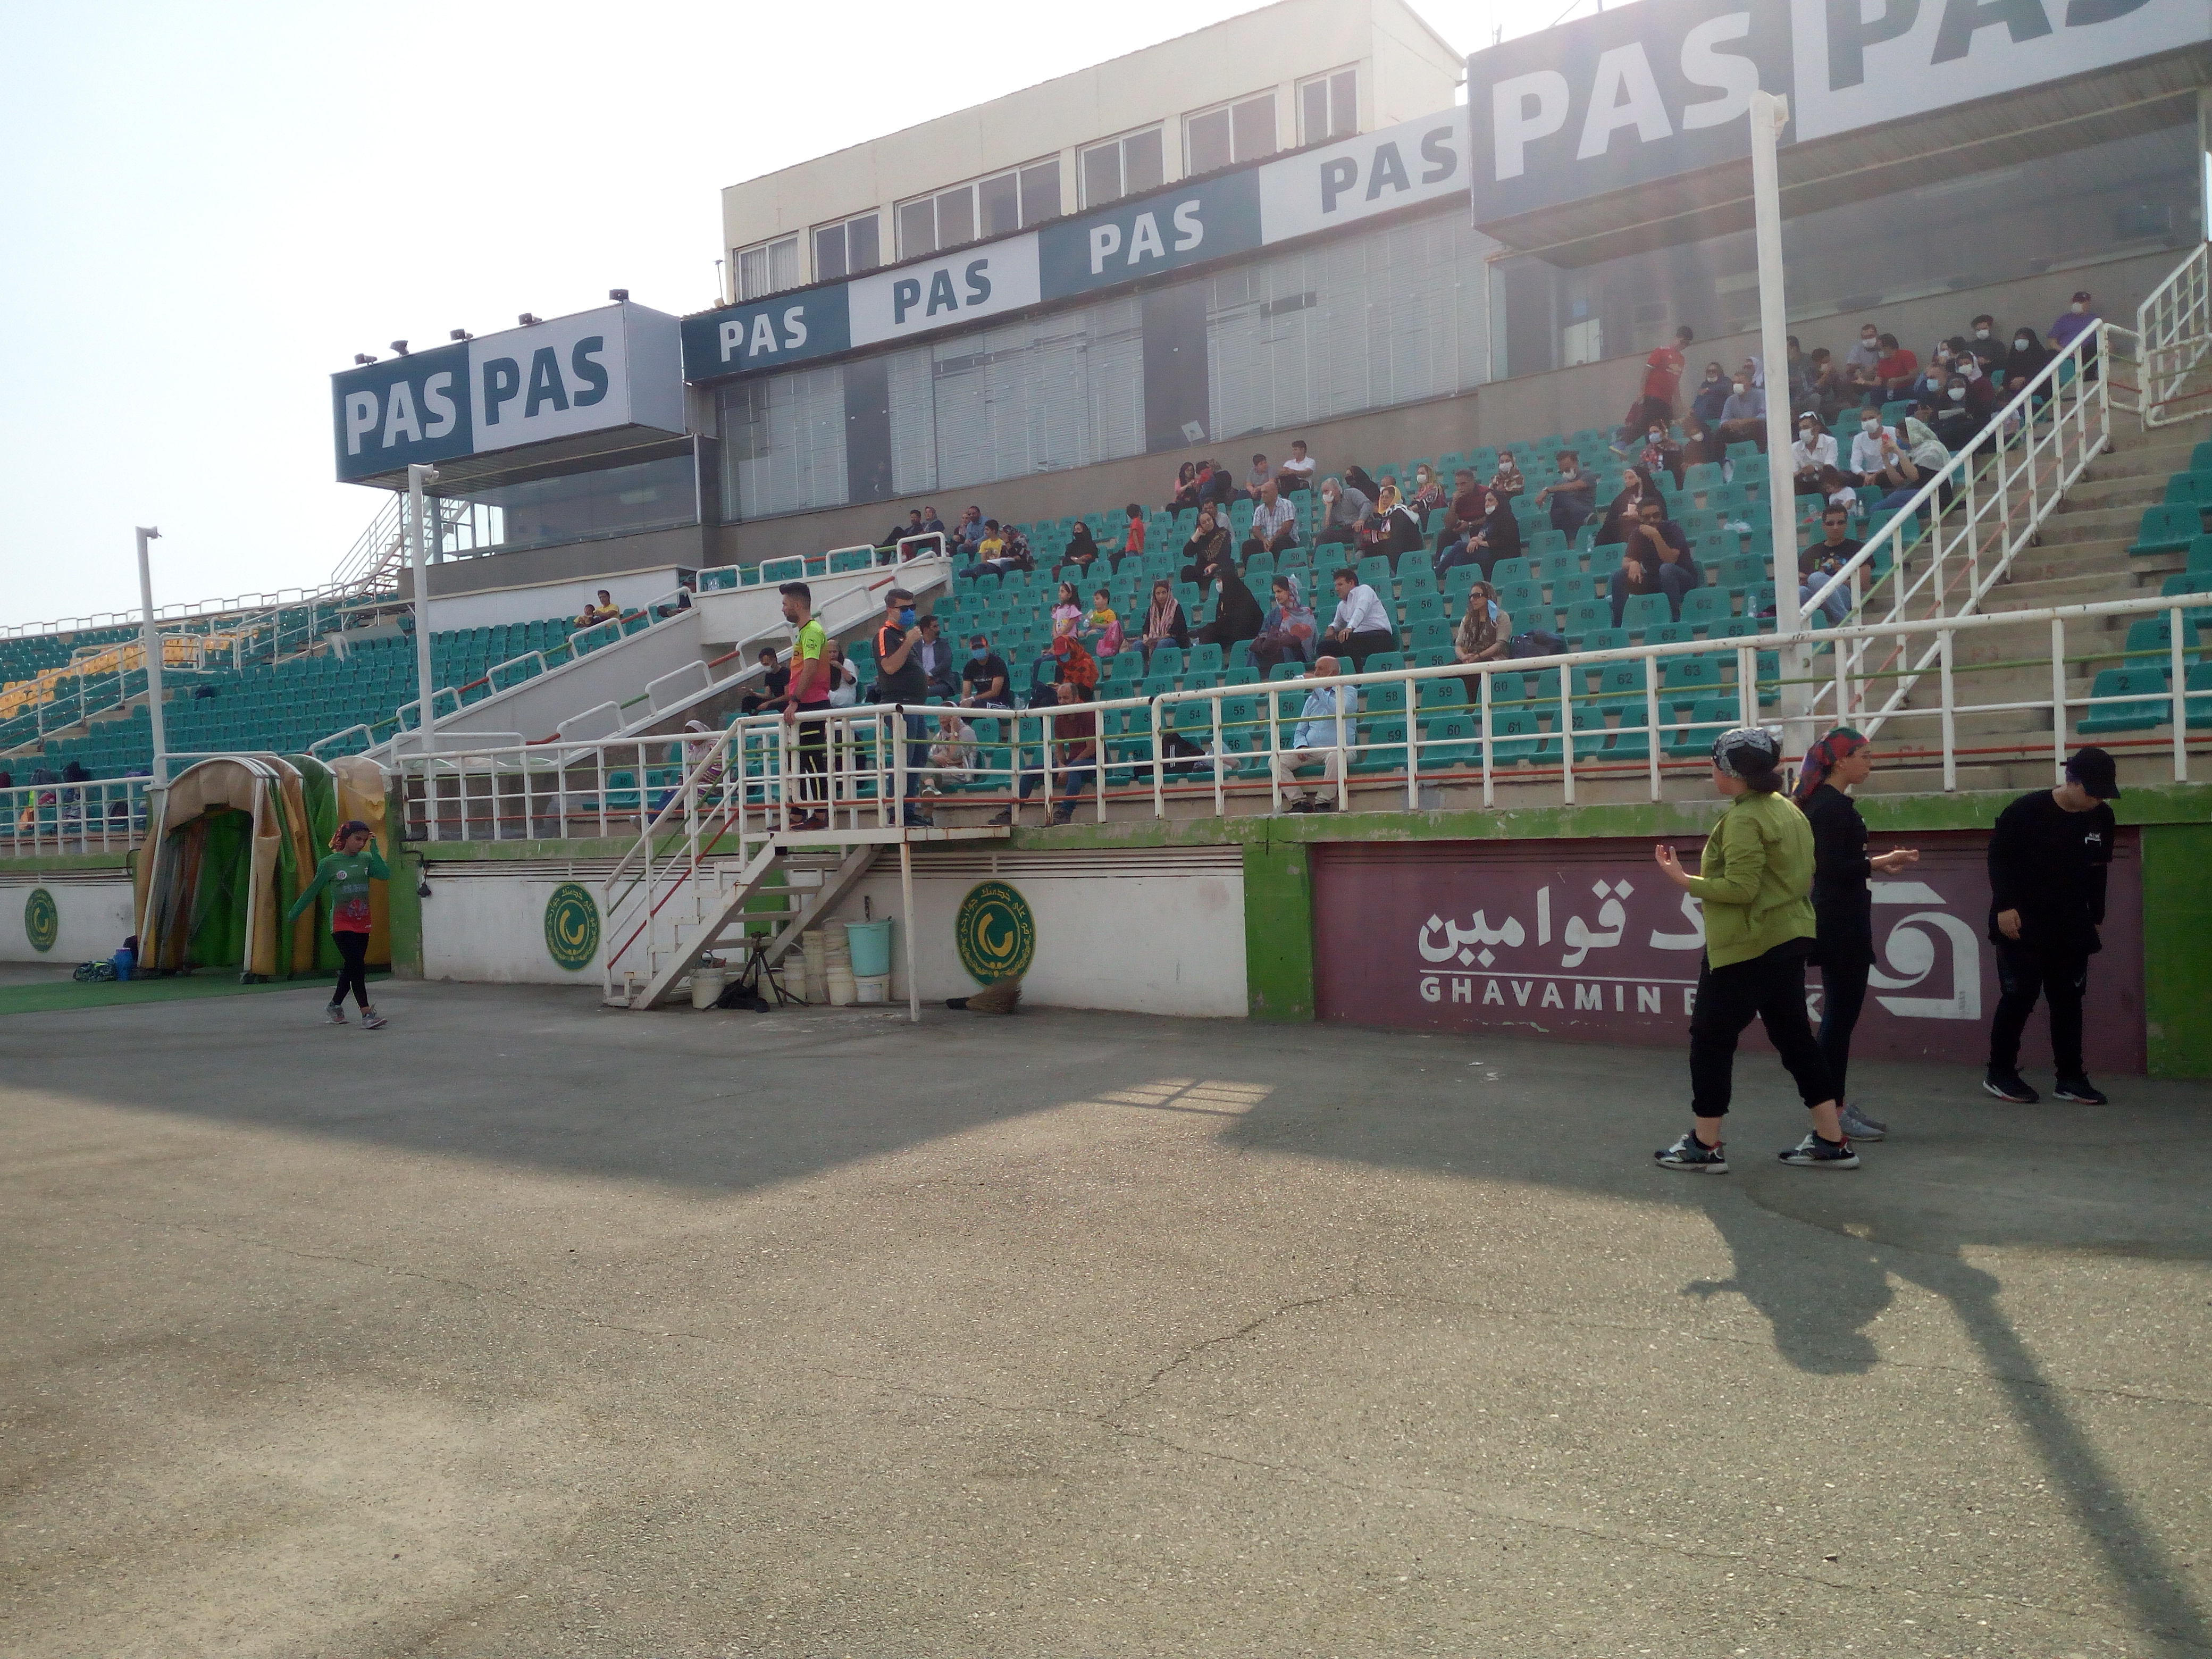 kids-runners-in-the-pas-stadium